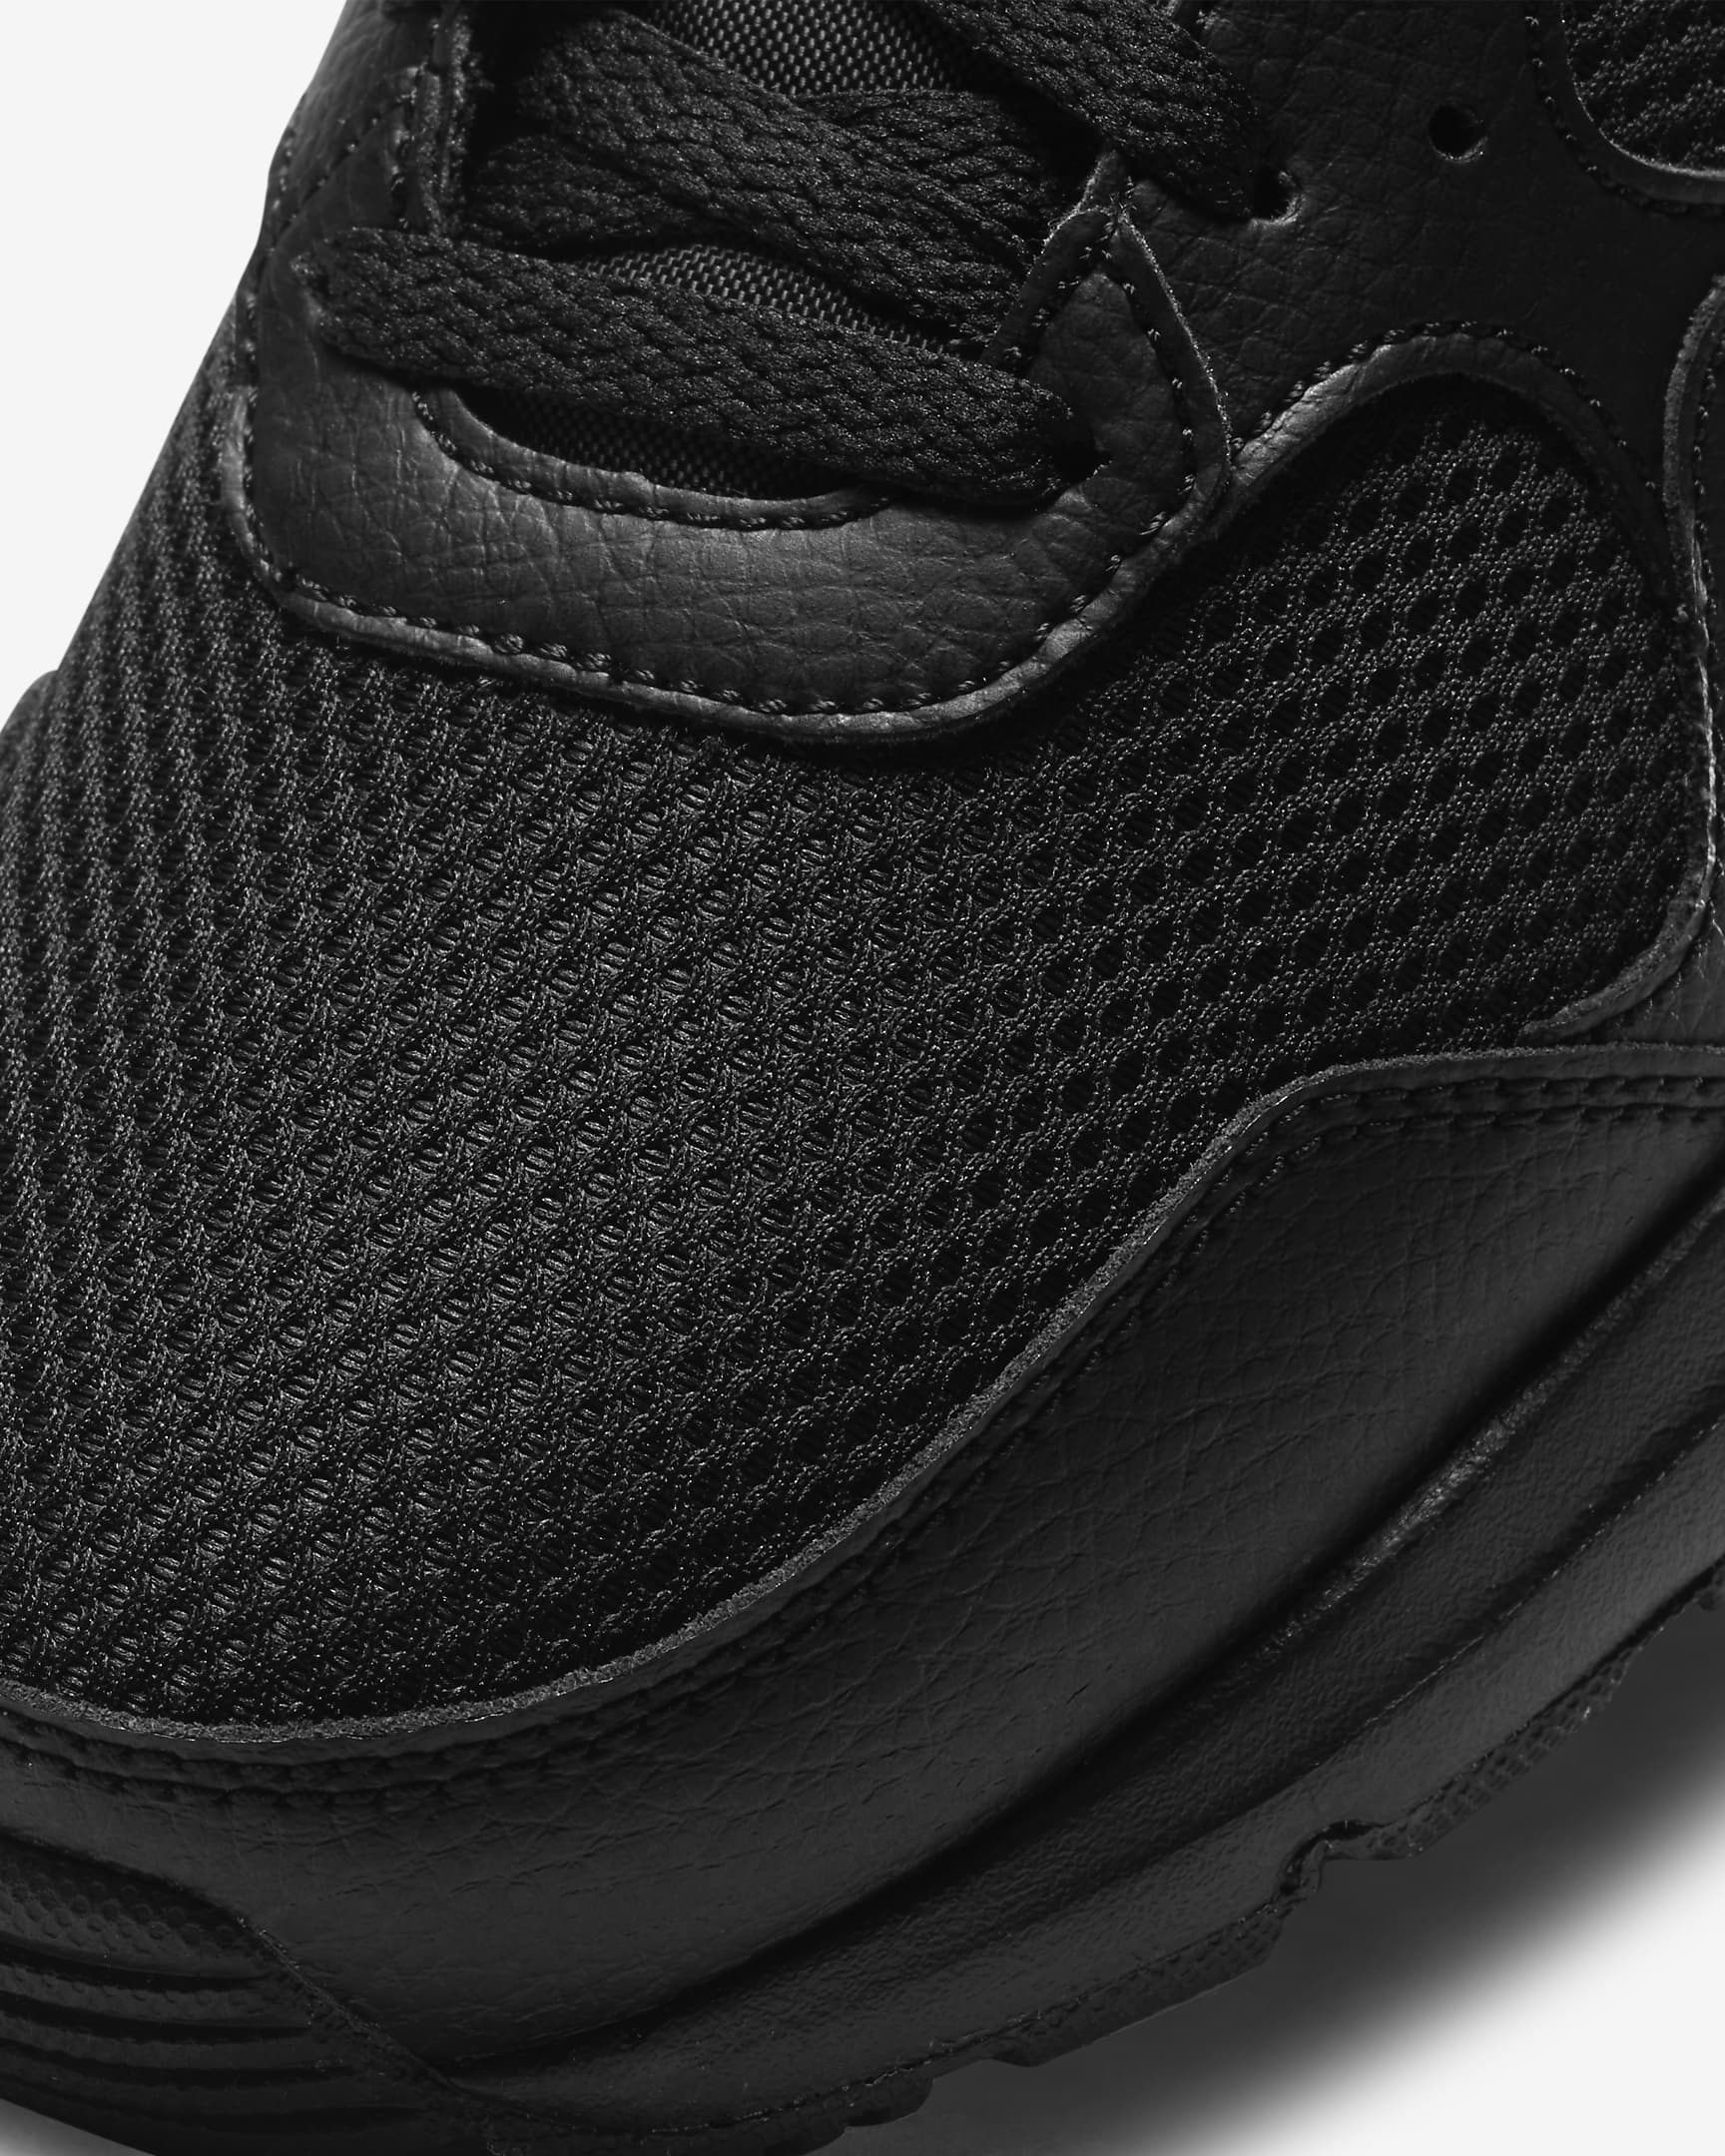 Nike Air Max SC Men's Shoes - Black/Black/Black